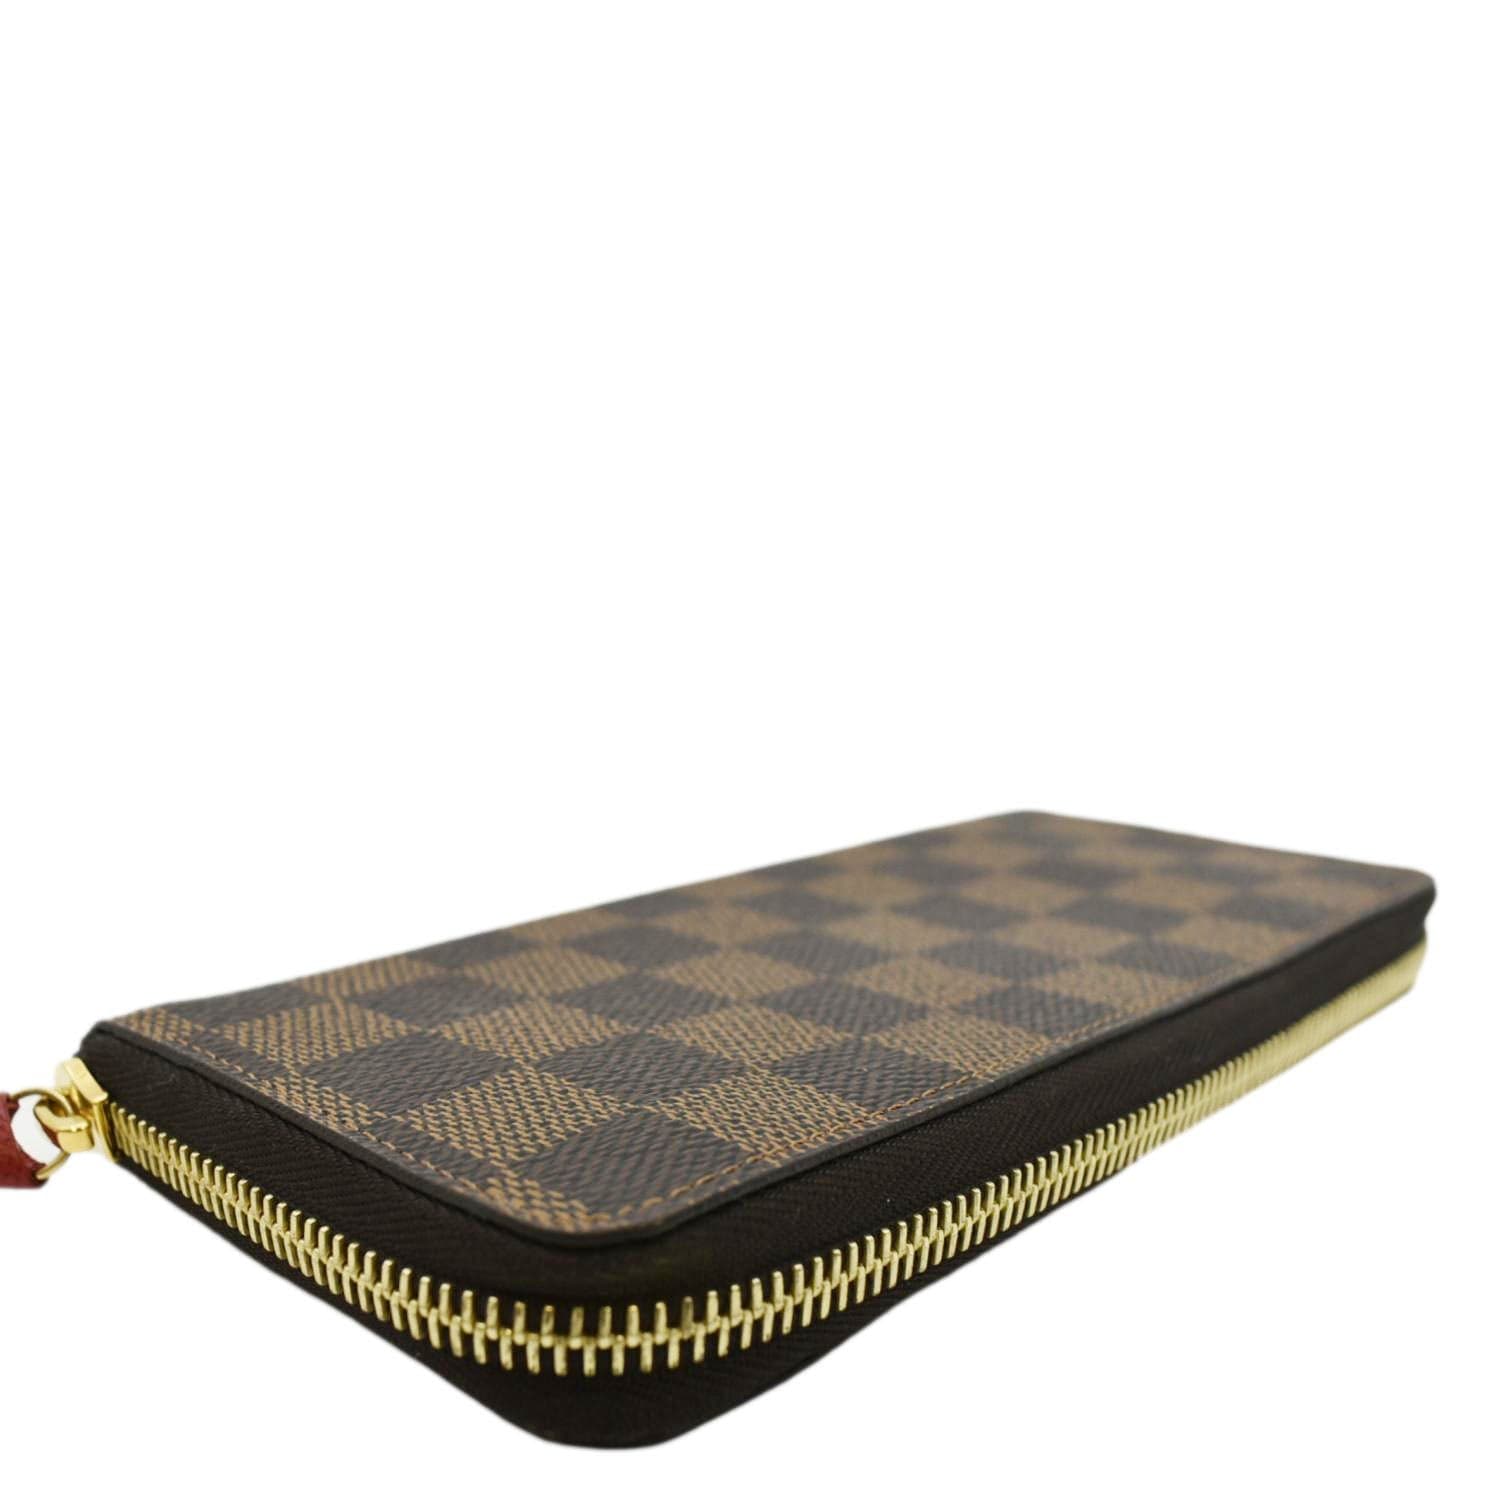 LV Black Checker Wallet w/ Zipper